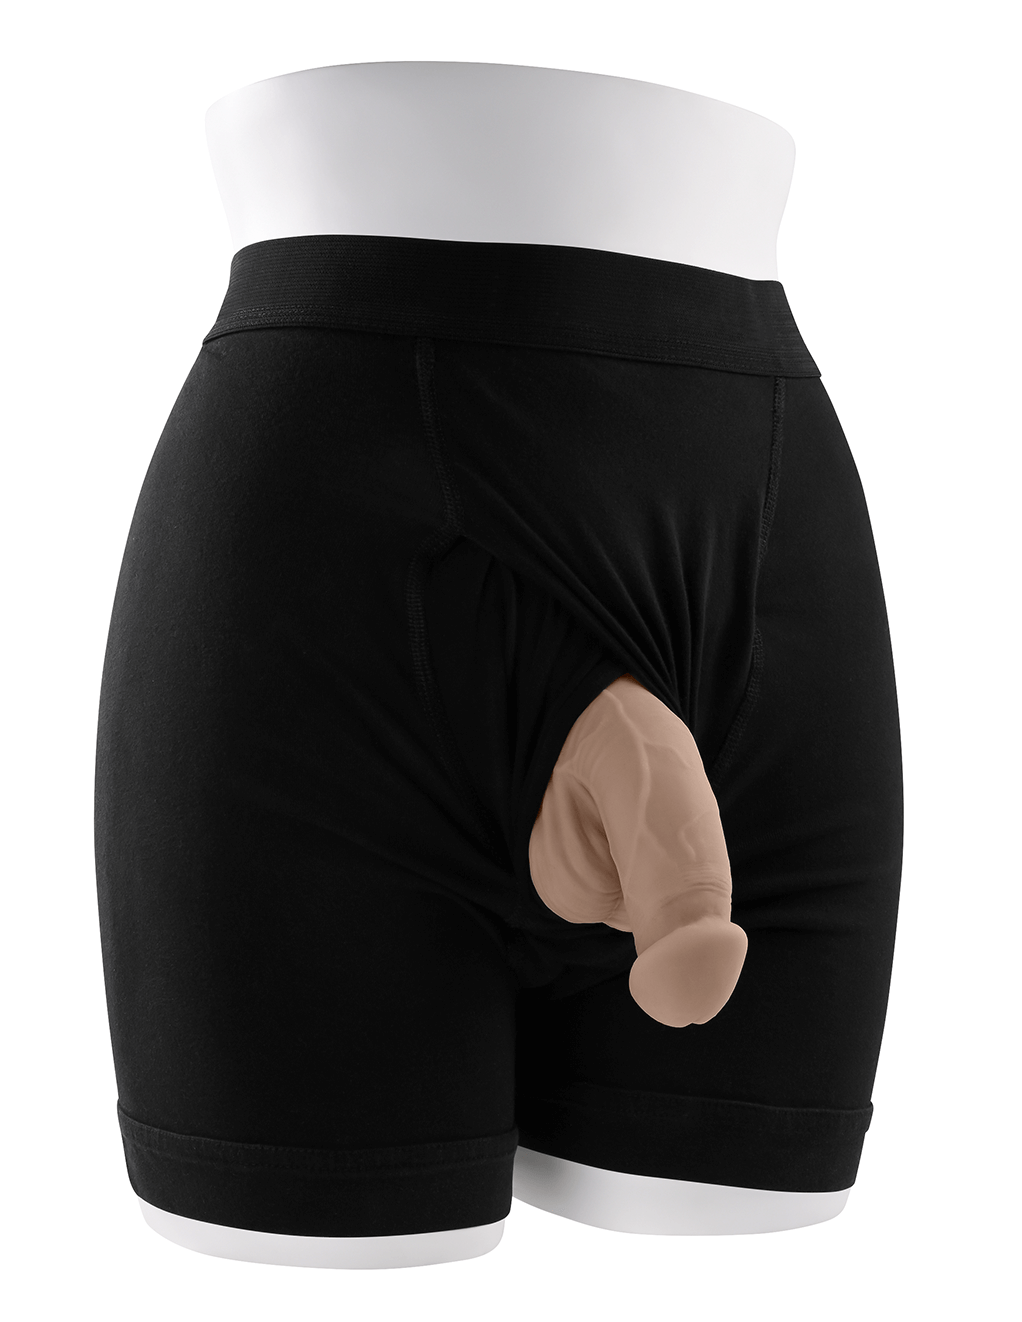 Gender X 4" Packer - Vanilla - Underwear Display